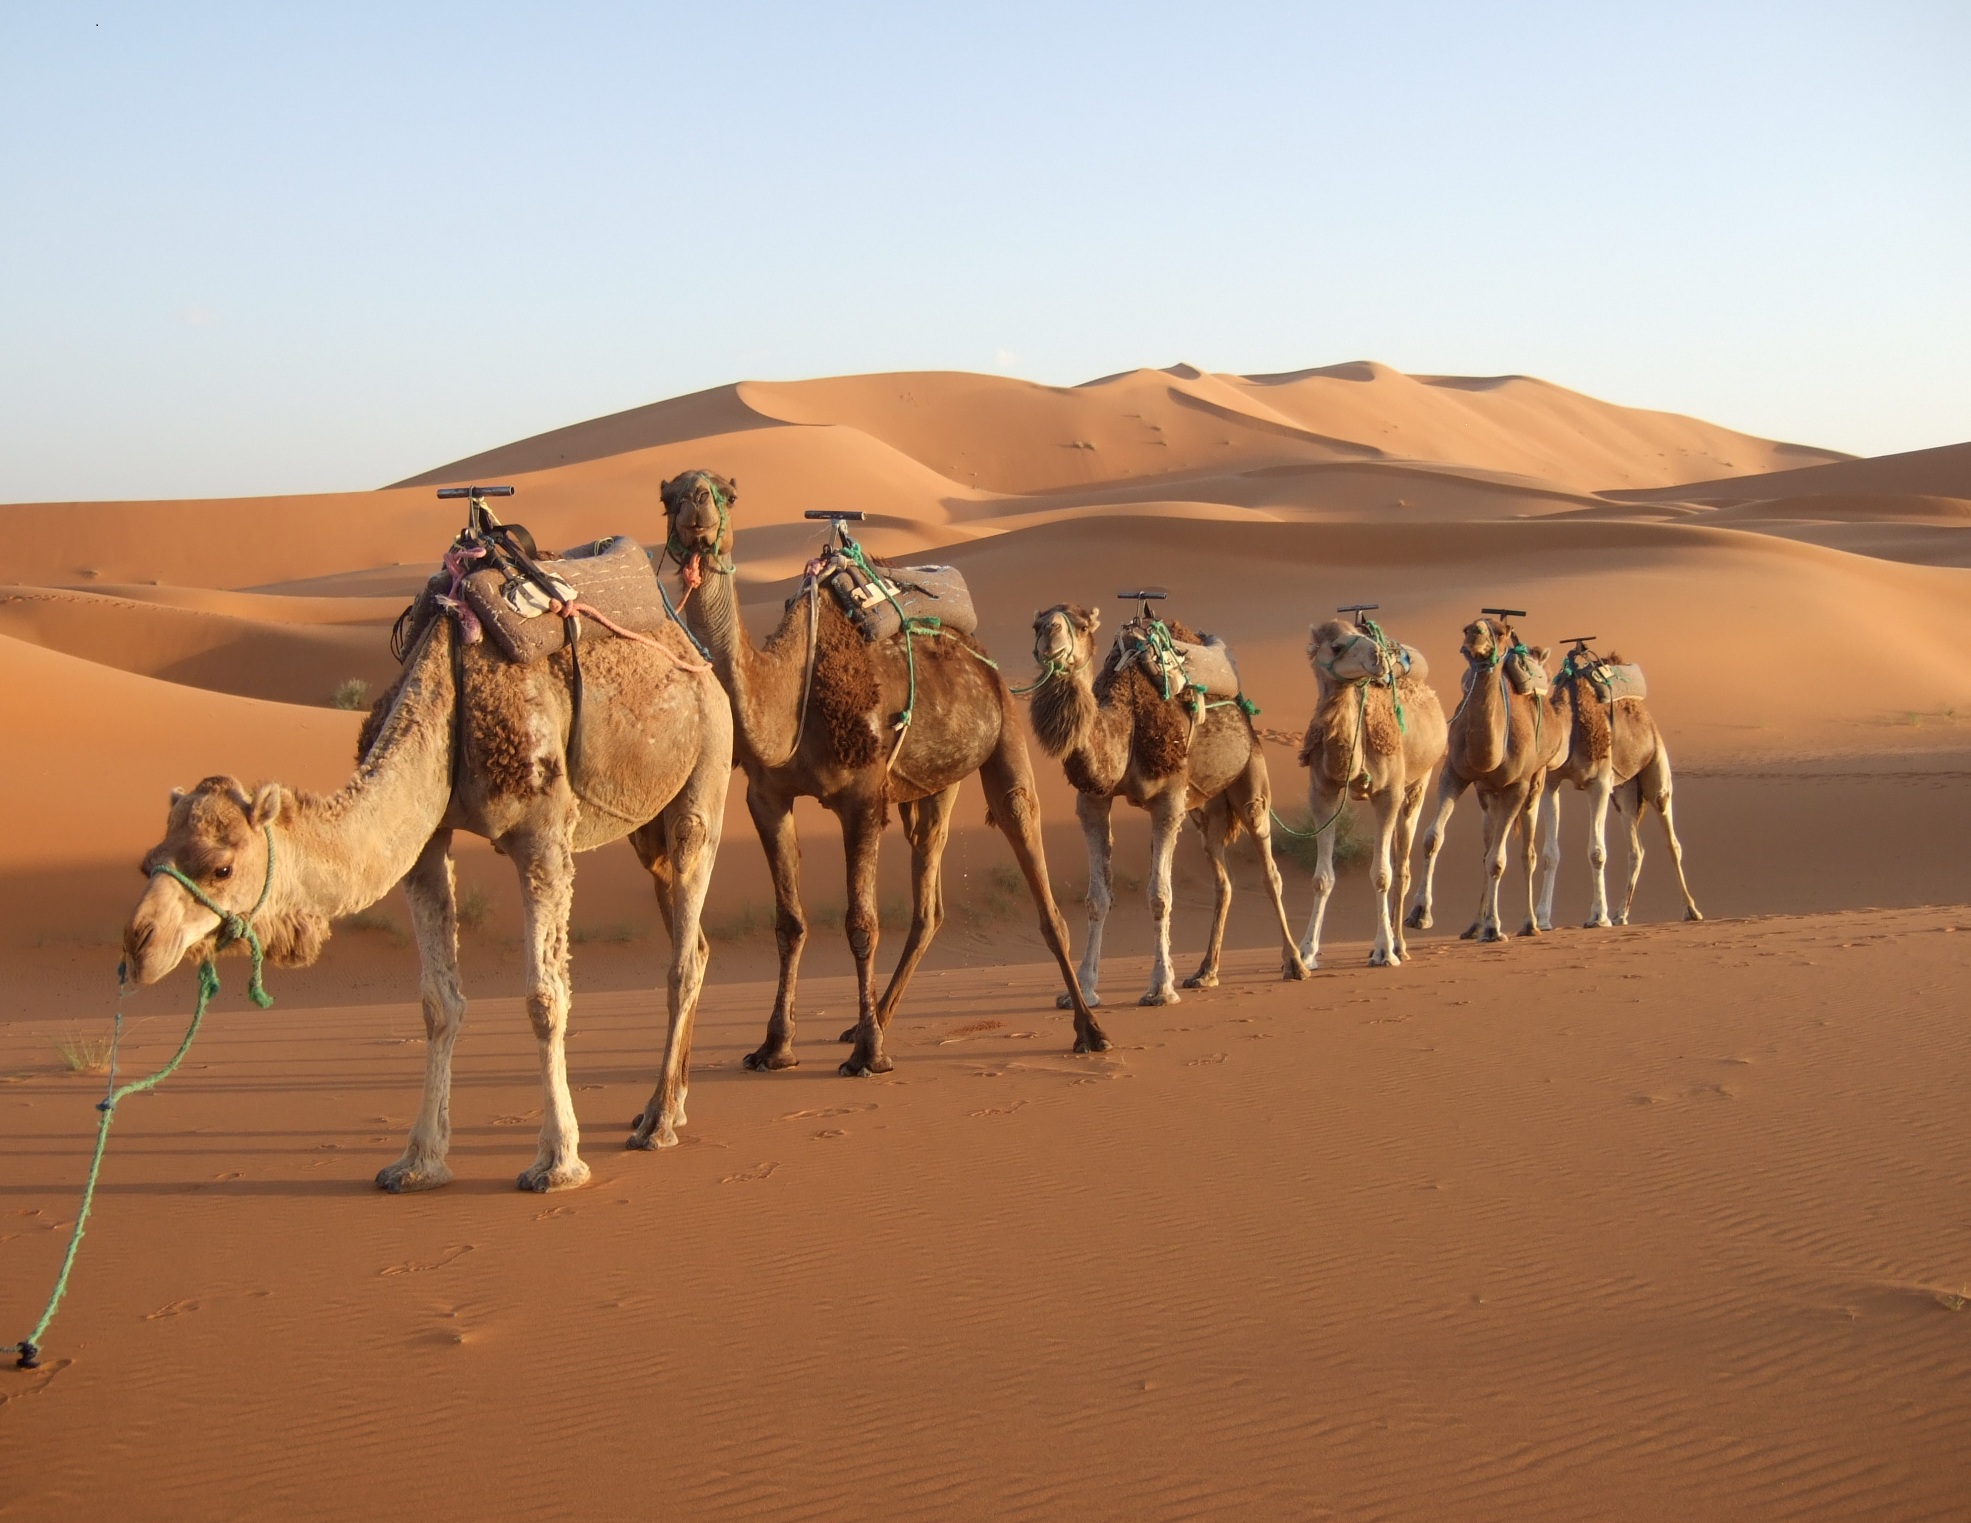 http://brennaanderst.files.wordpress.com/2011/10/morocco-desert-camel.jpg